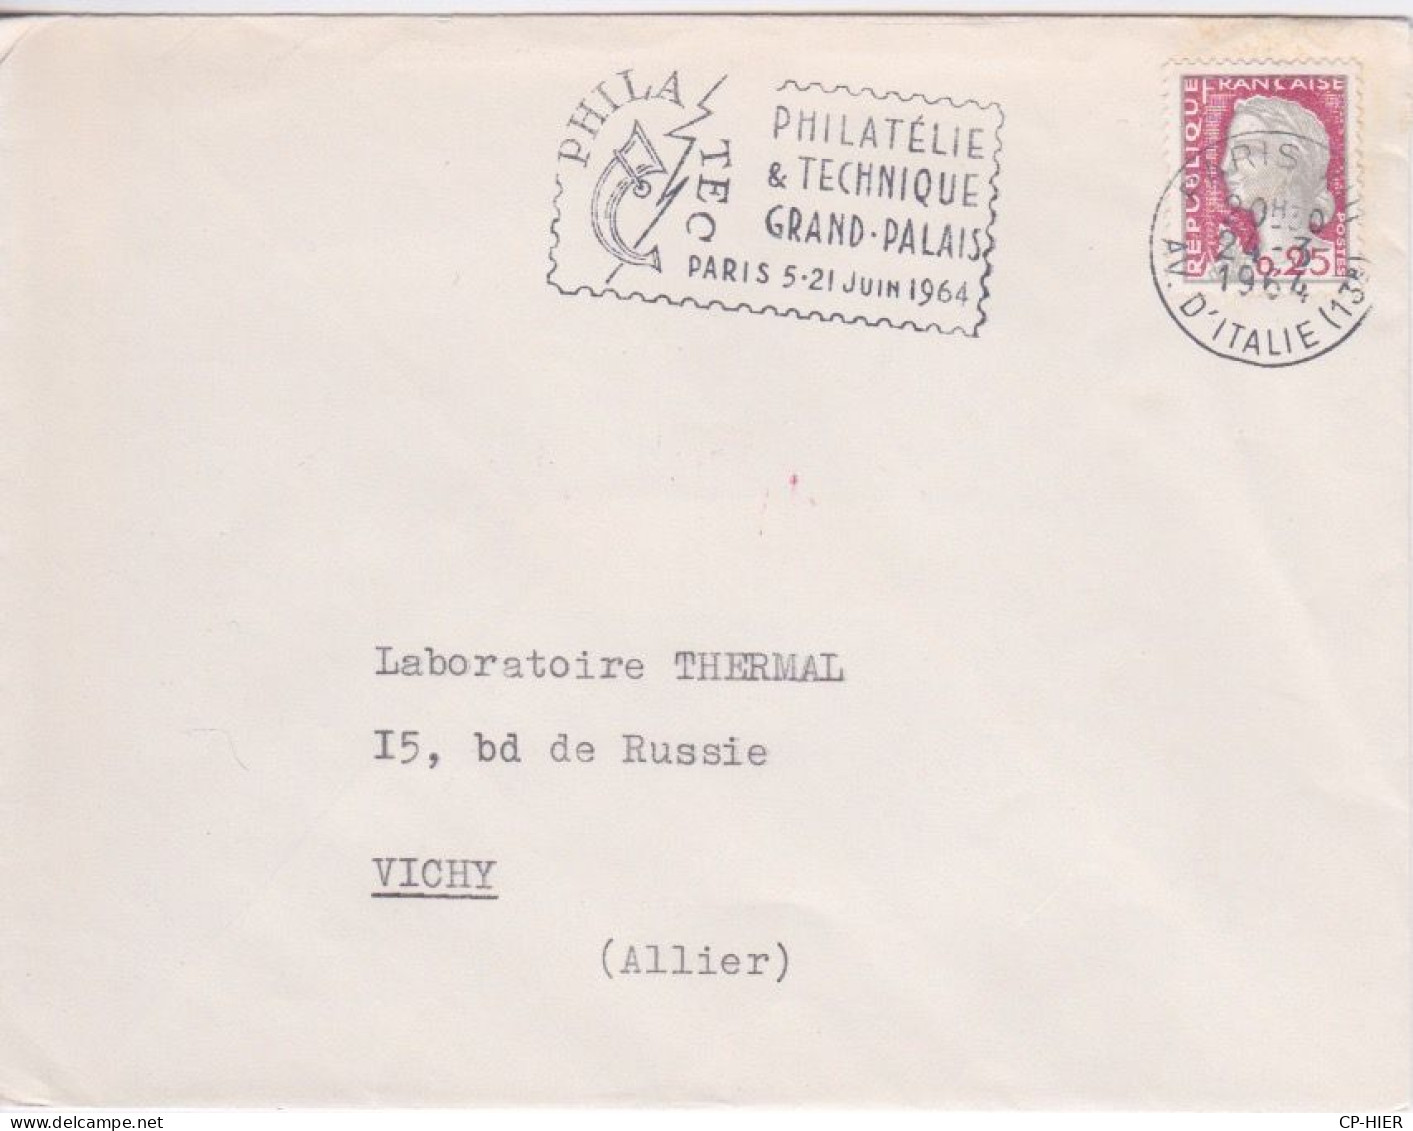 FRANCE - FLAMME  PHILATEC PARIS 5 21 JUIN 1964 - PHILATELIE & TECHNIQUE GRAND PALAIS - Mechanical Postmarks (Advertisement)